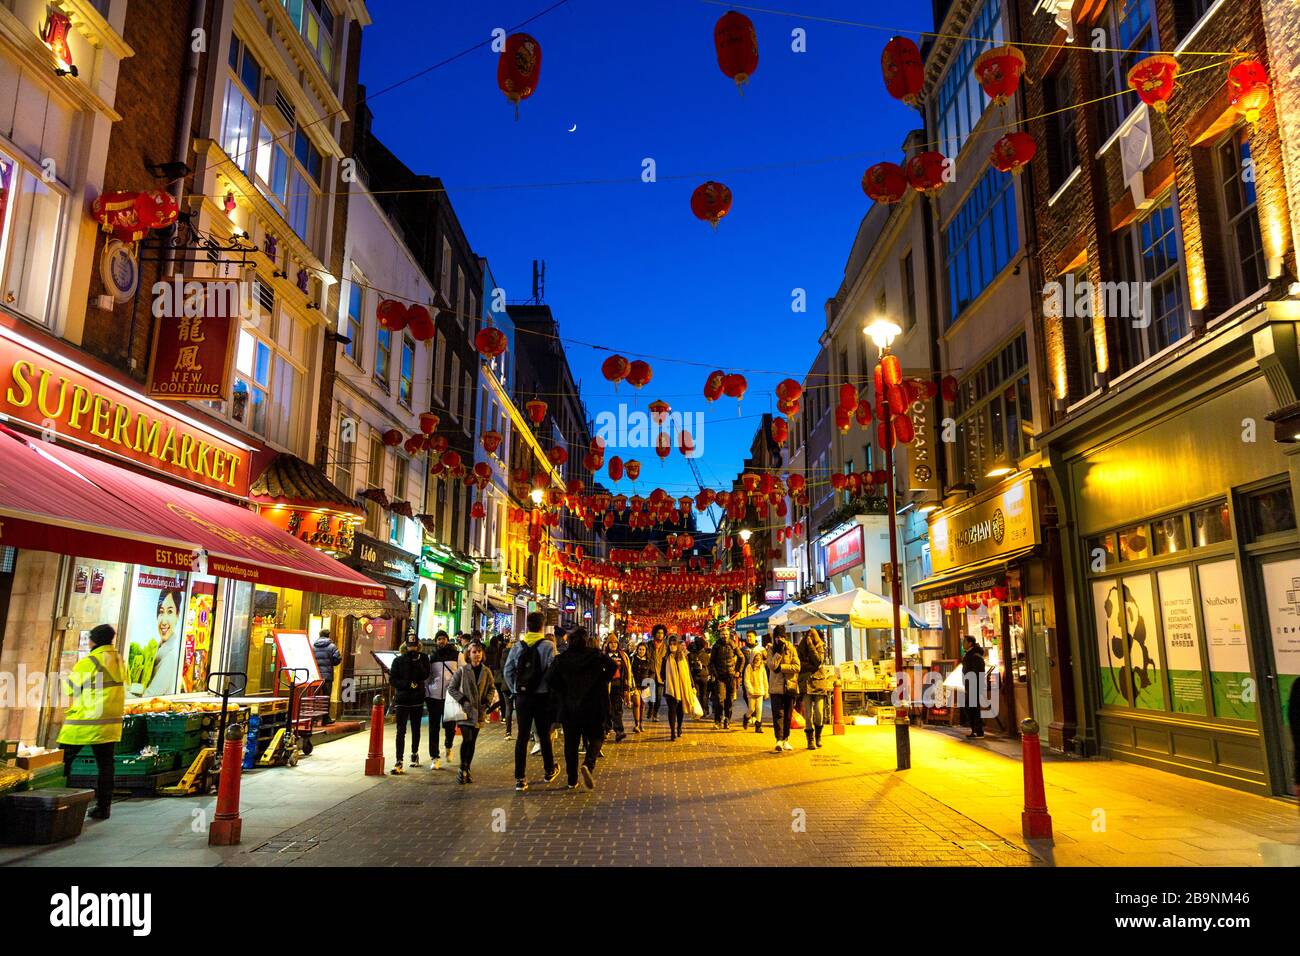 Rote und gelbe chinesische Laternen hängen nachts in China Town, London, Großbritannien über einer Straße Stockfoto